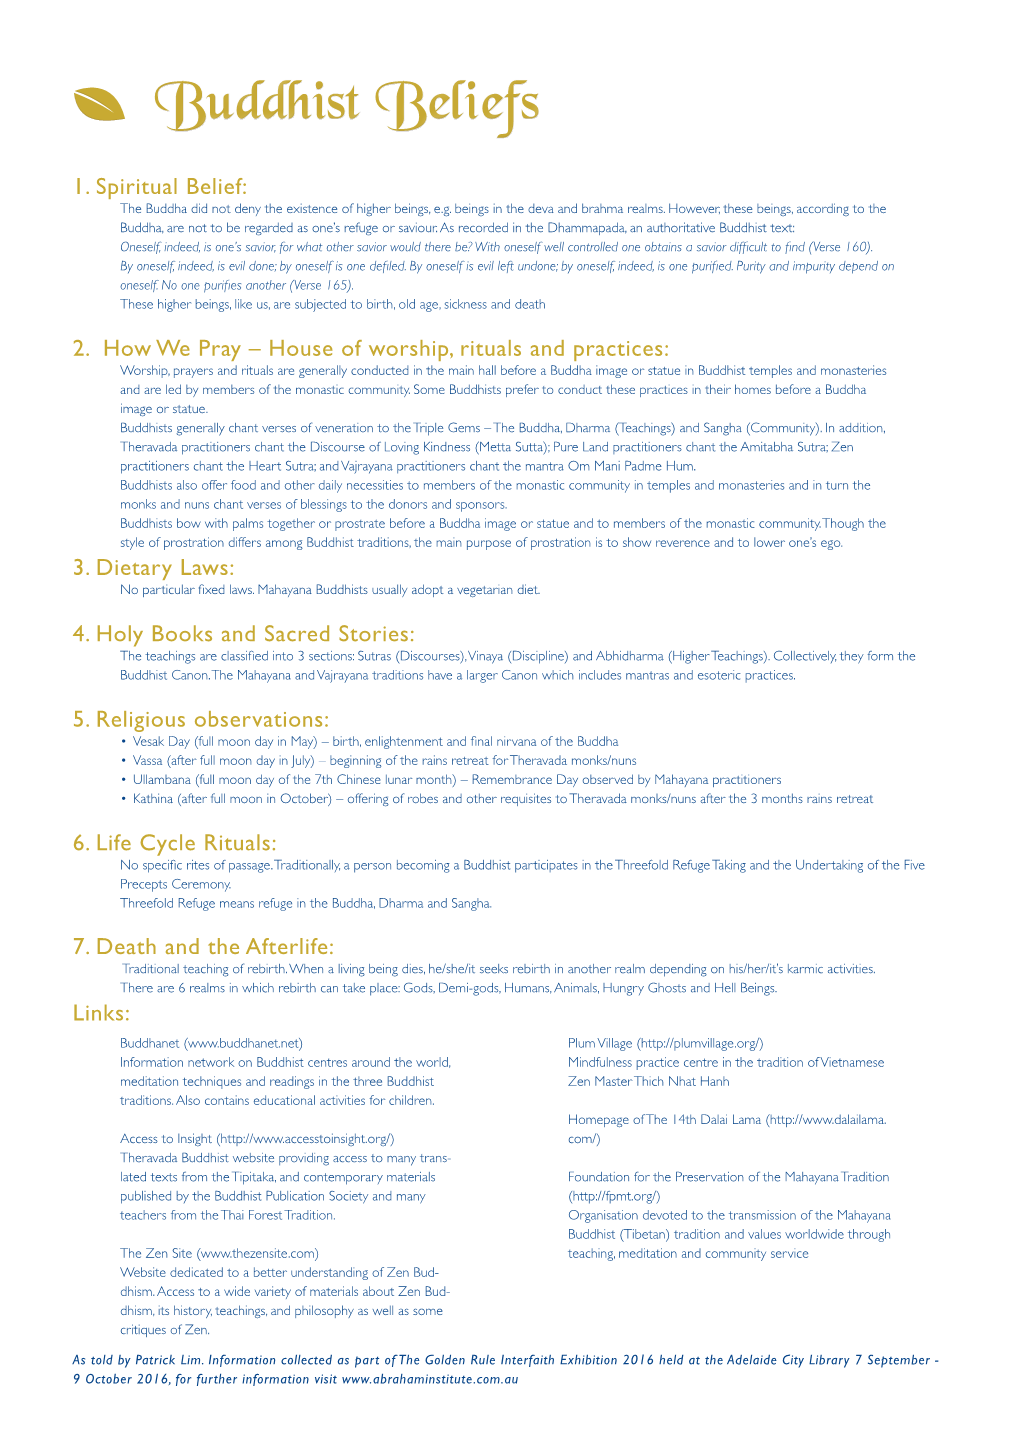 PDF of Buddhist Beliefs & Information